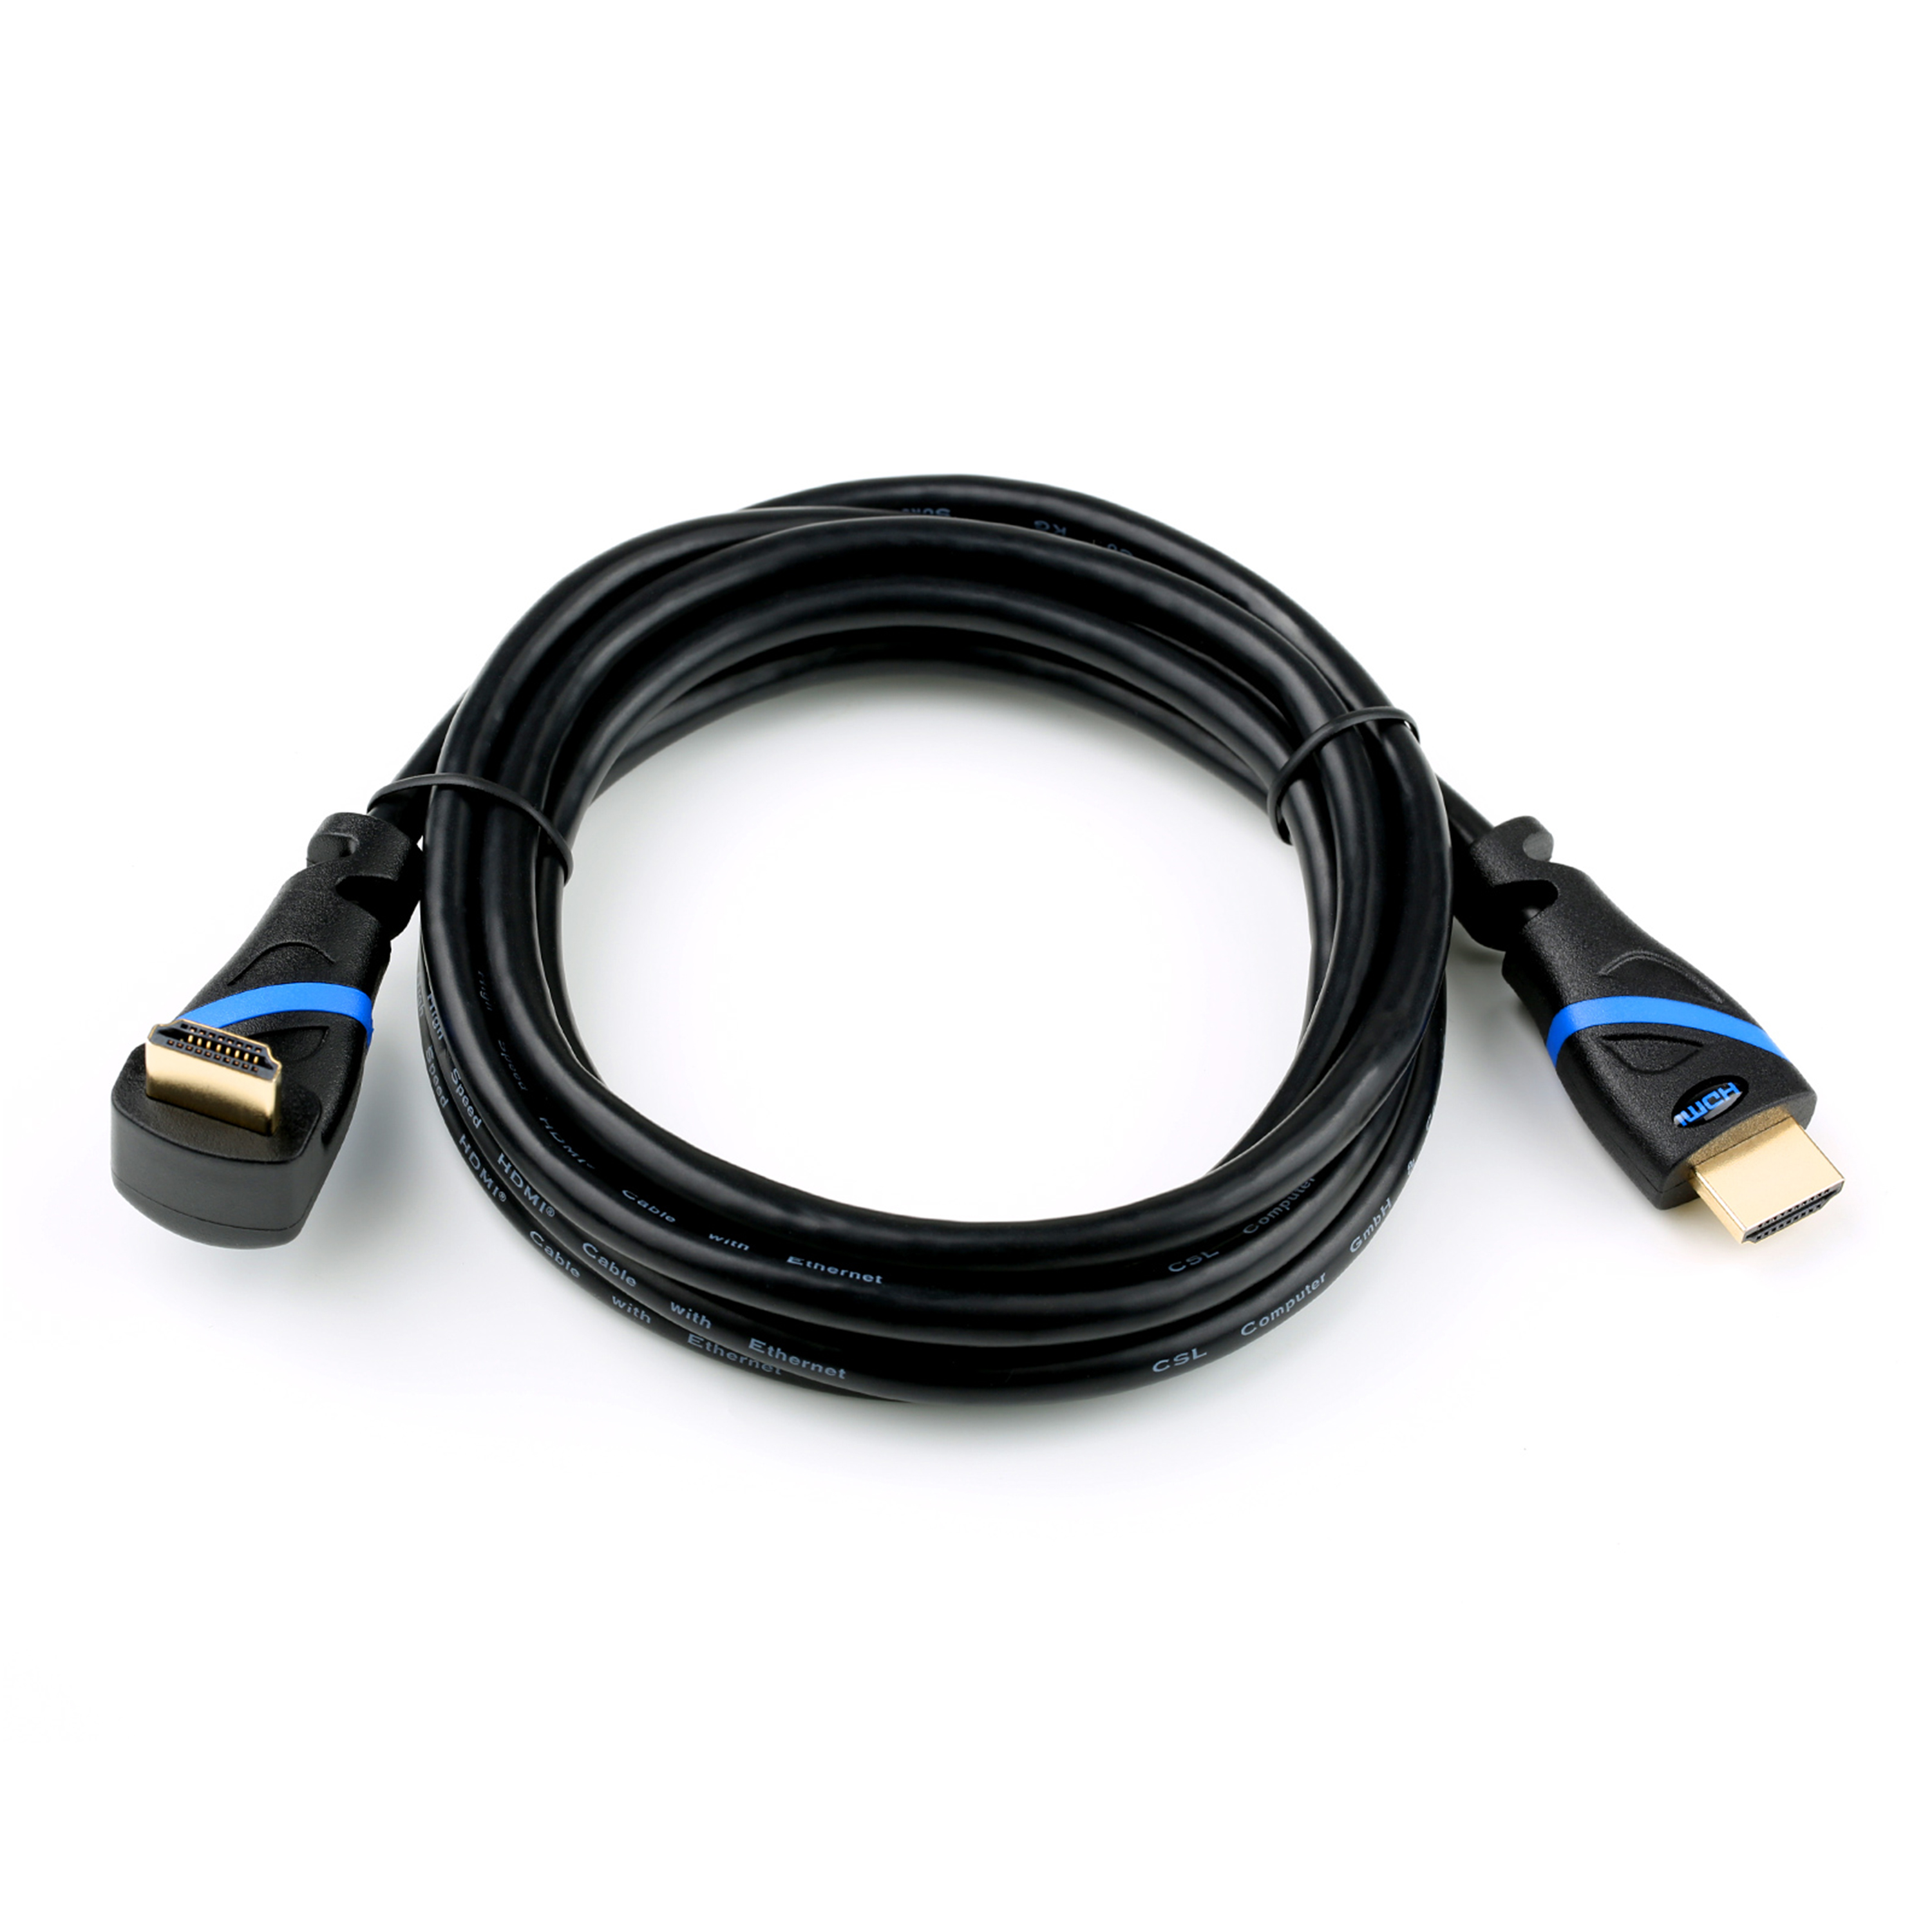 Kabel, 2m gewinkelt, HDMI HDMI 2.0 schwarz/blau CSL Kabel,